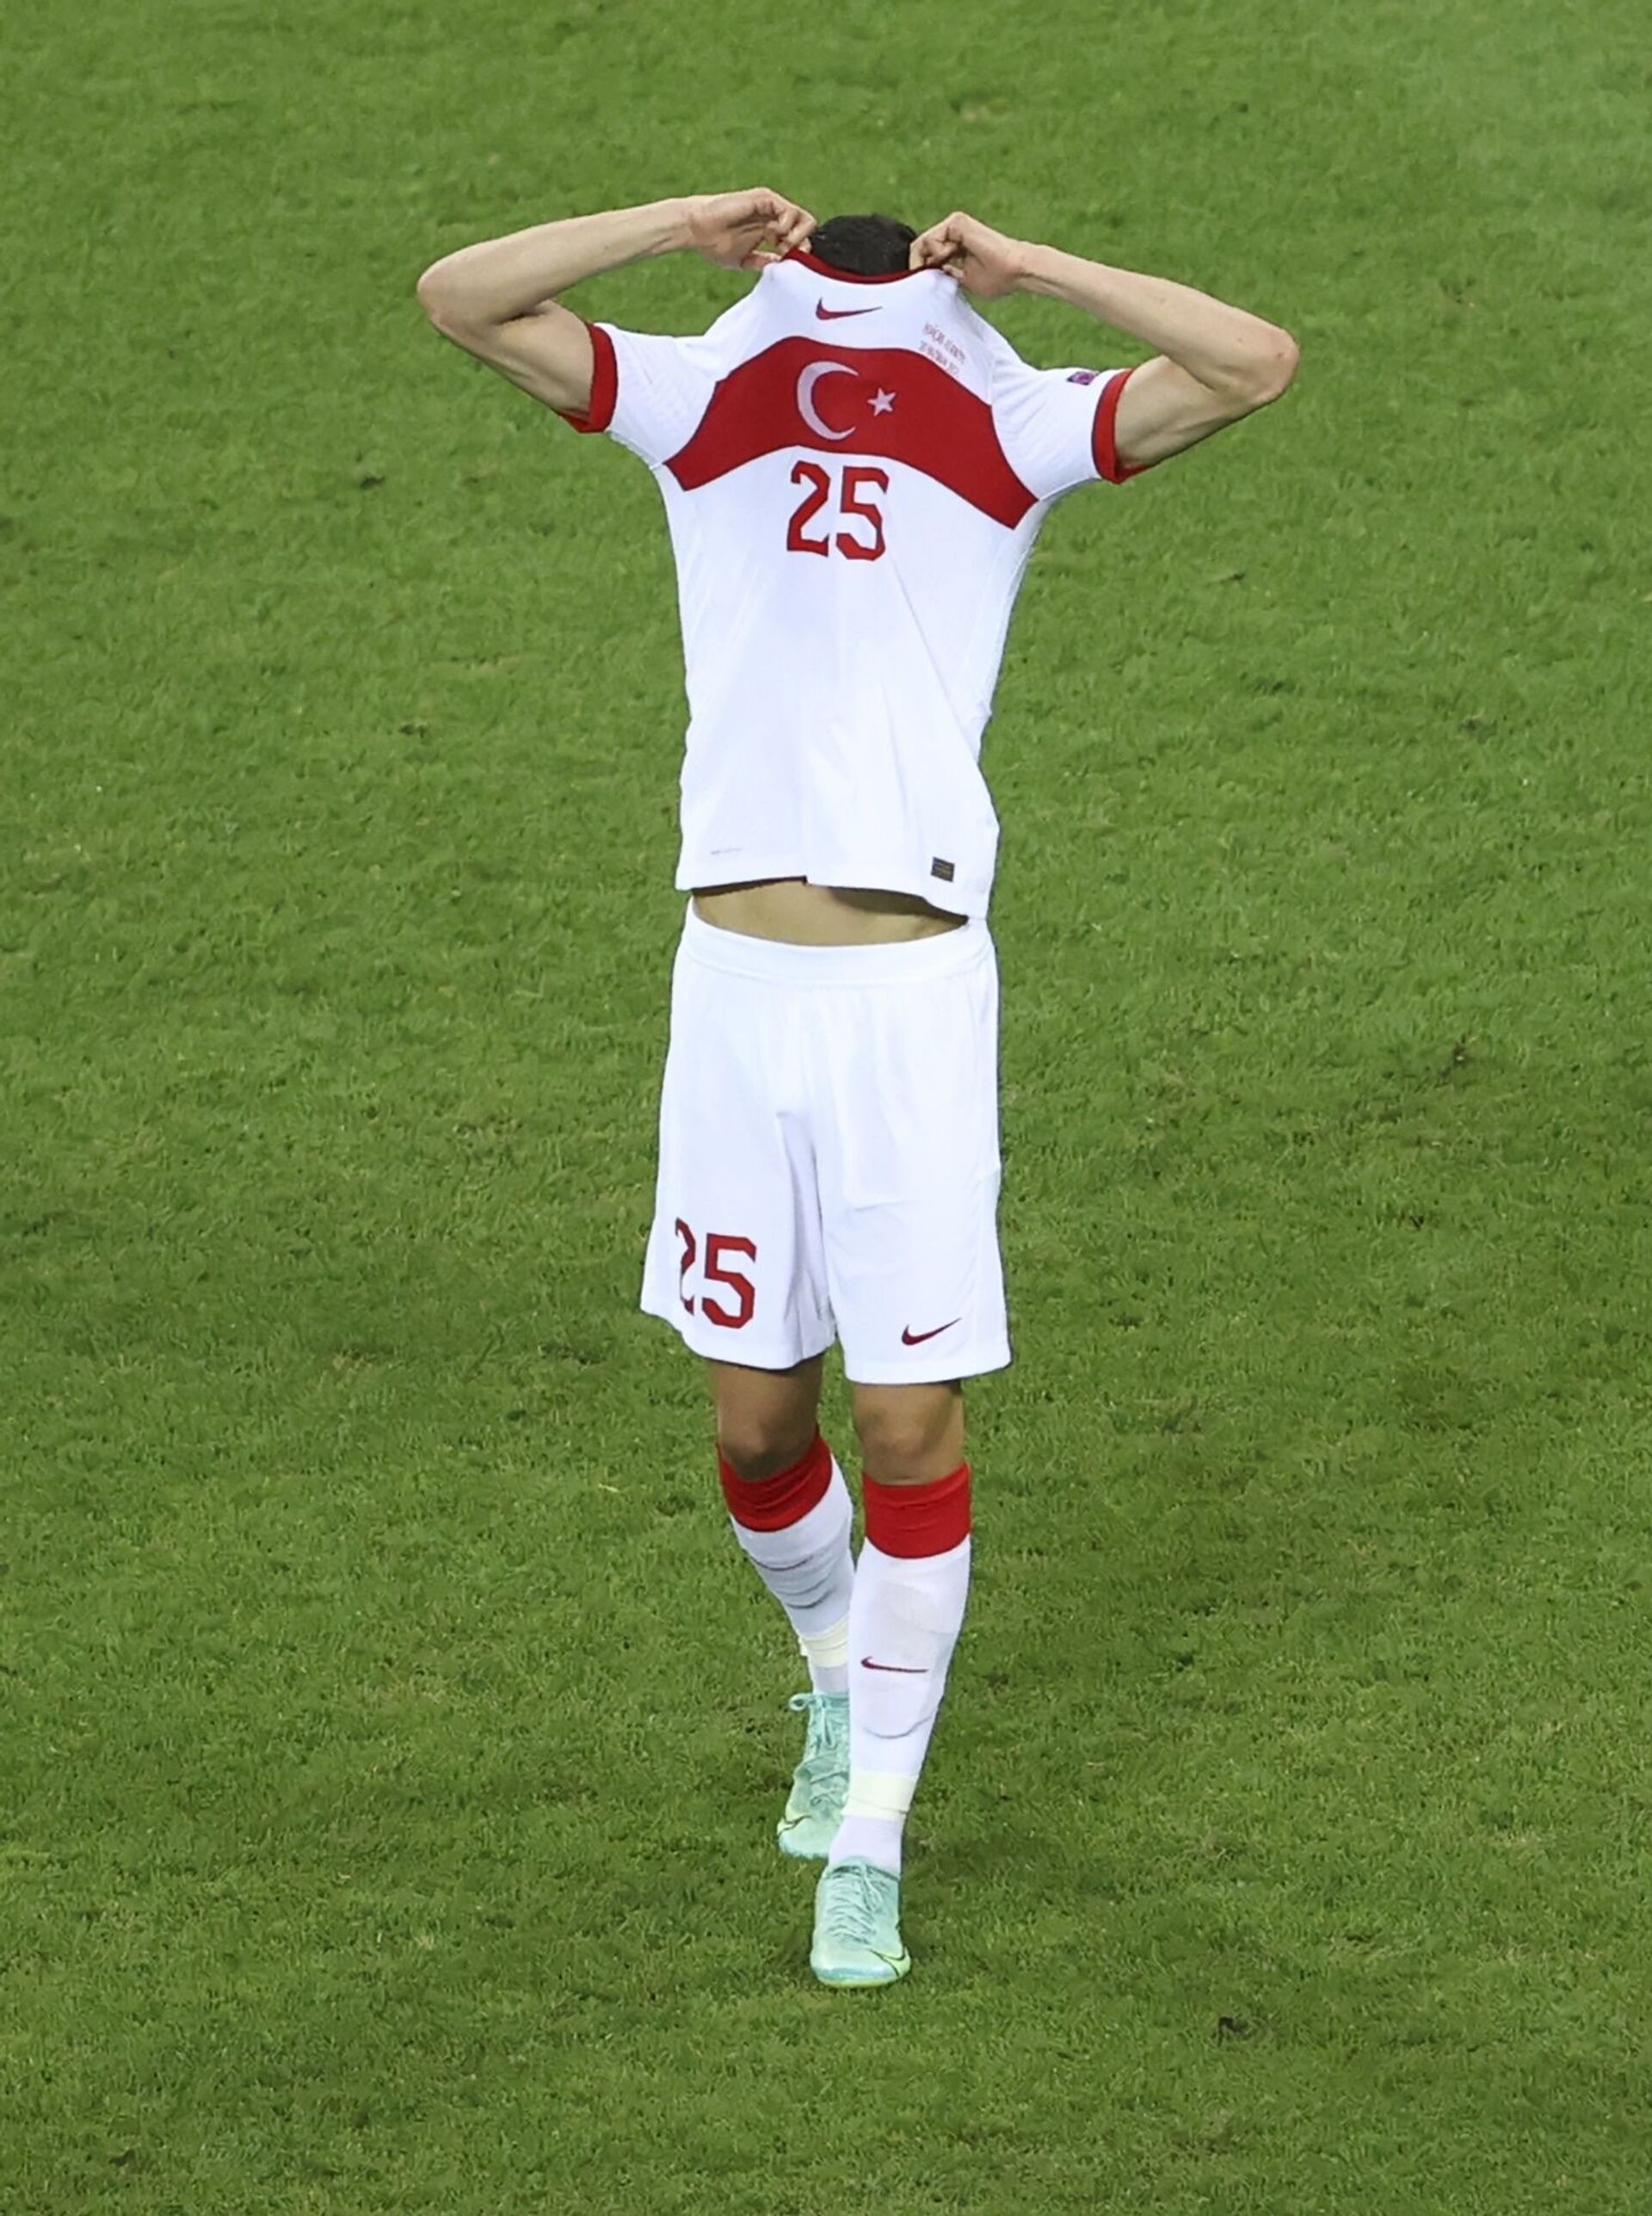 Đội tuyển Thụy Sĩ thắng đội tuyển Thổ Nhĩ Kỳ trong vòng bảng EURO 2020 với tỷ số 3:1 - Sputnik Việt Nam, 1920, 21.06.2021